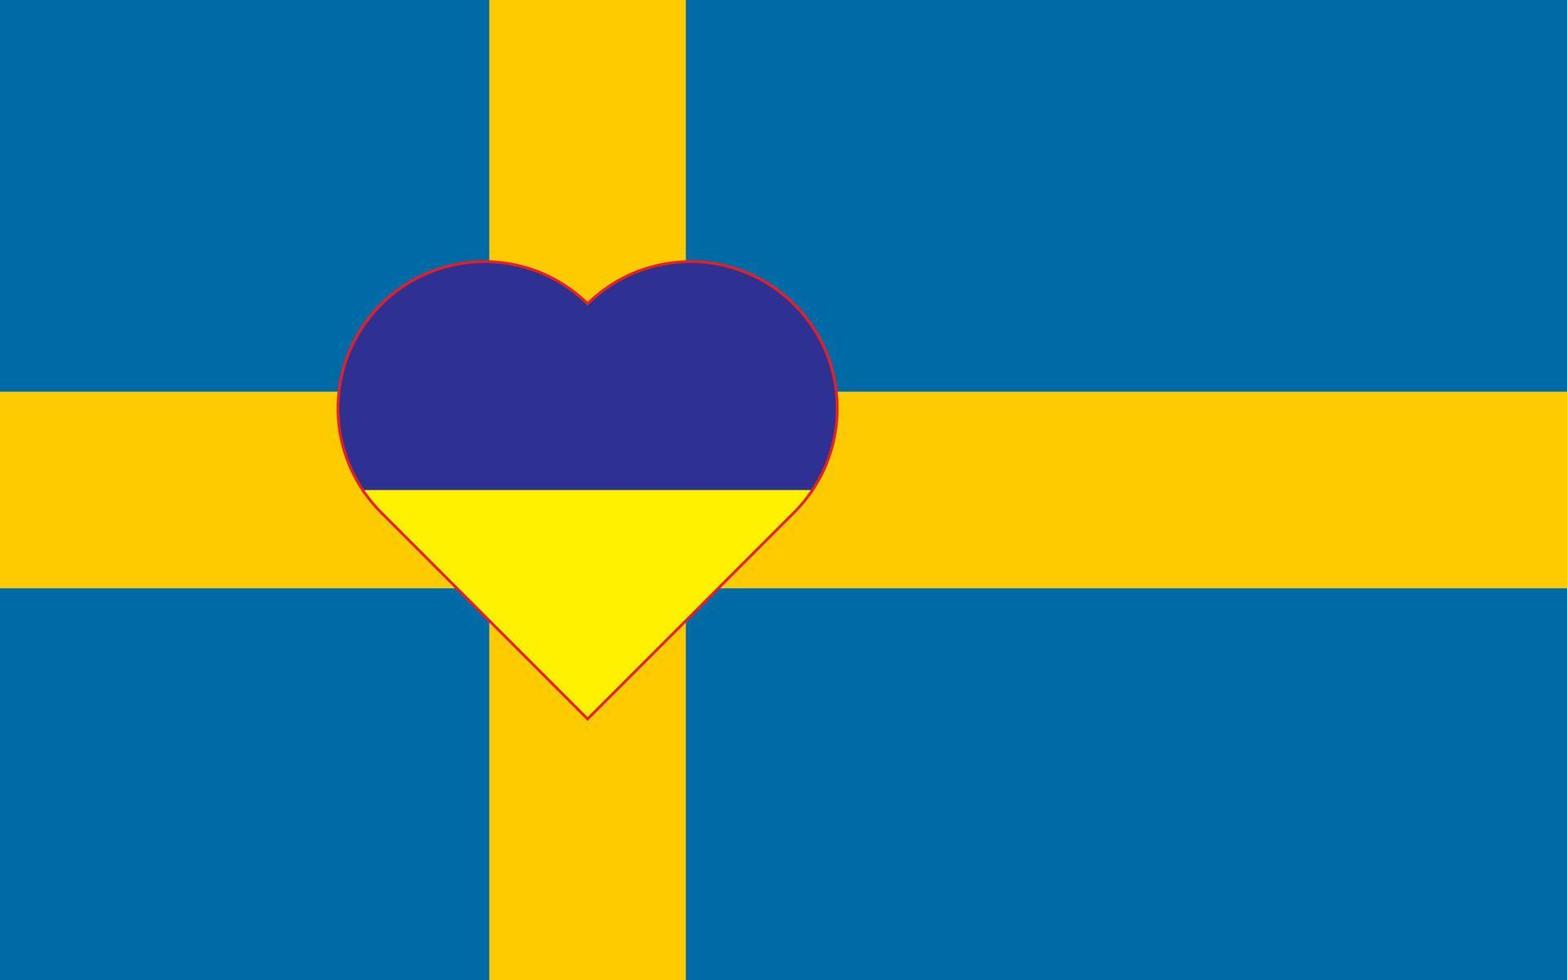 un corazón pintado con los colores de la bandera de ucrania en la bandera de suecia. ilustración vectorial de un corazón azul y amarillo en el símbolo nacional. vector